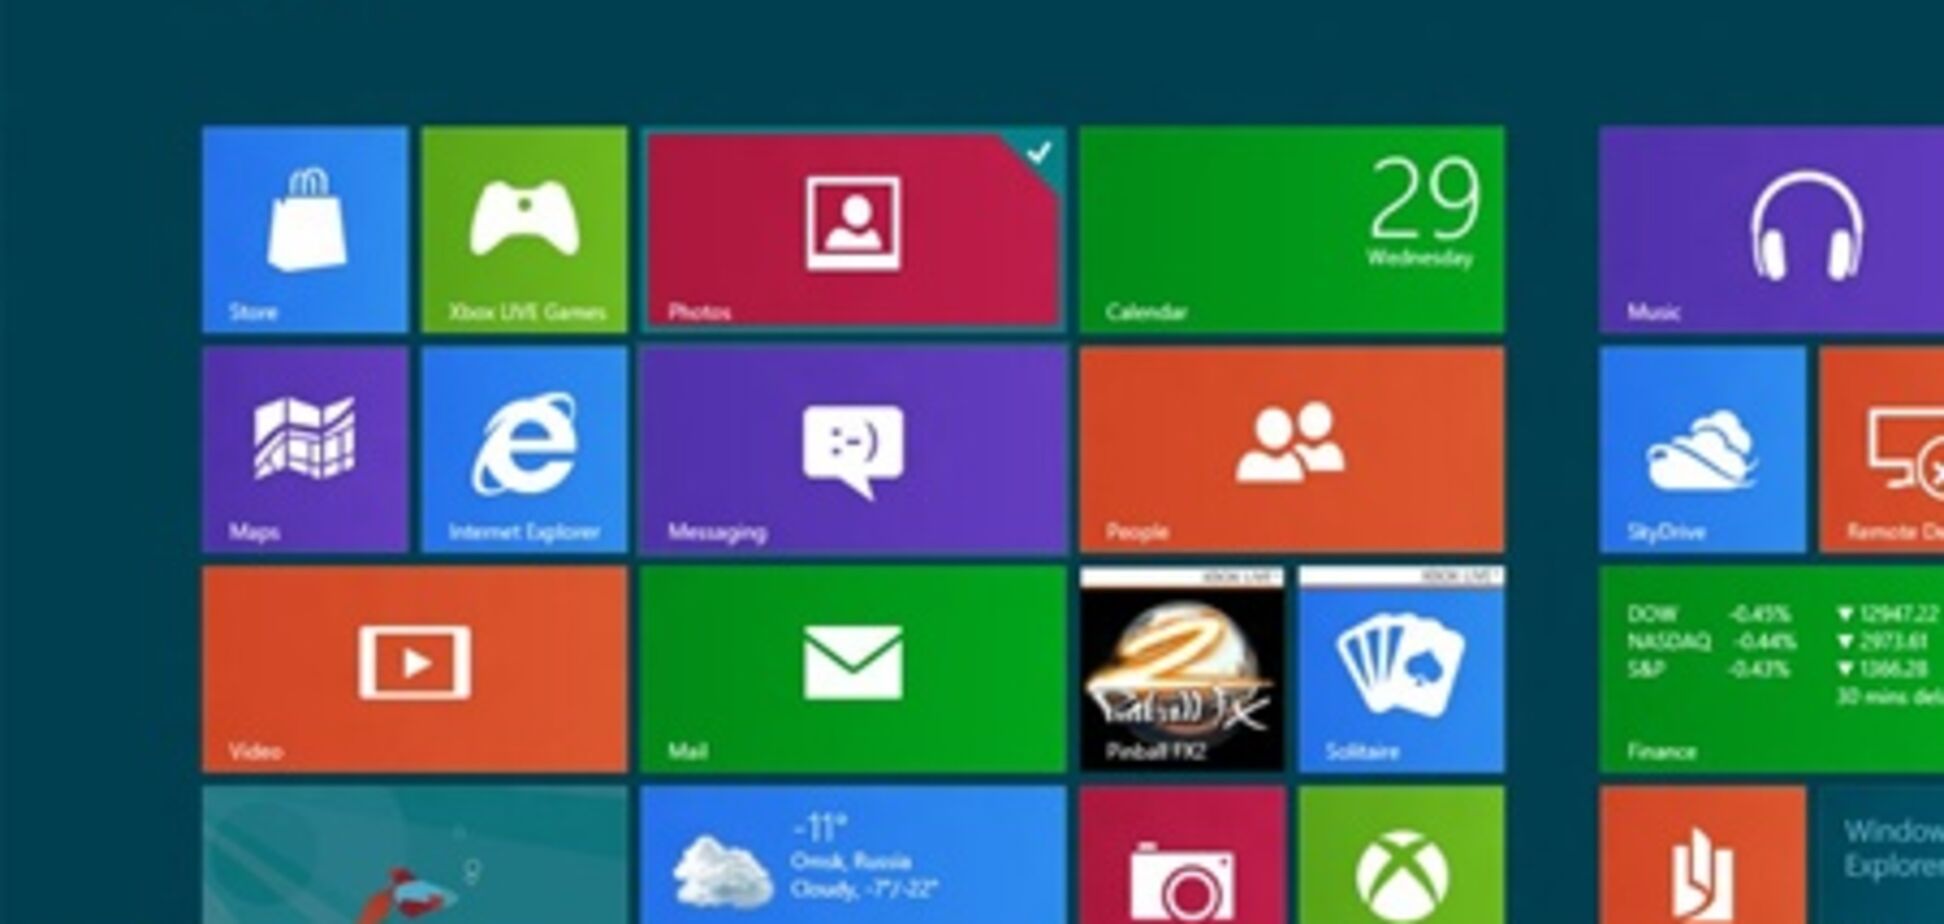 Новую Windows 8 скачали бесплатно за первые сутки миллион раз 